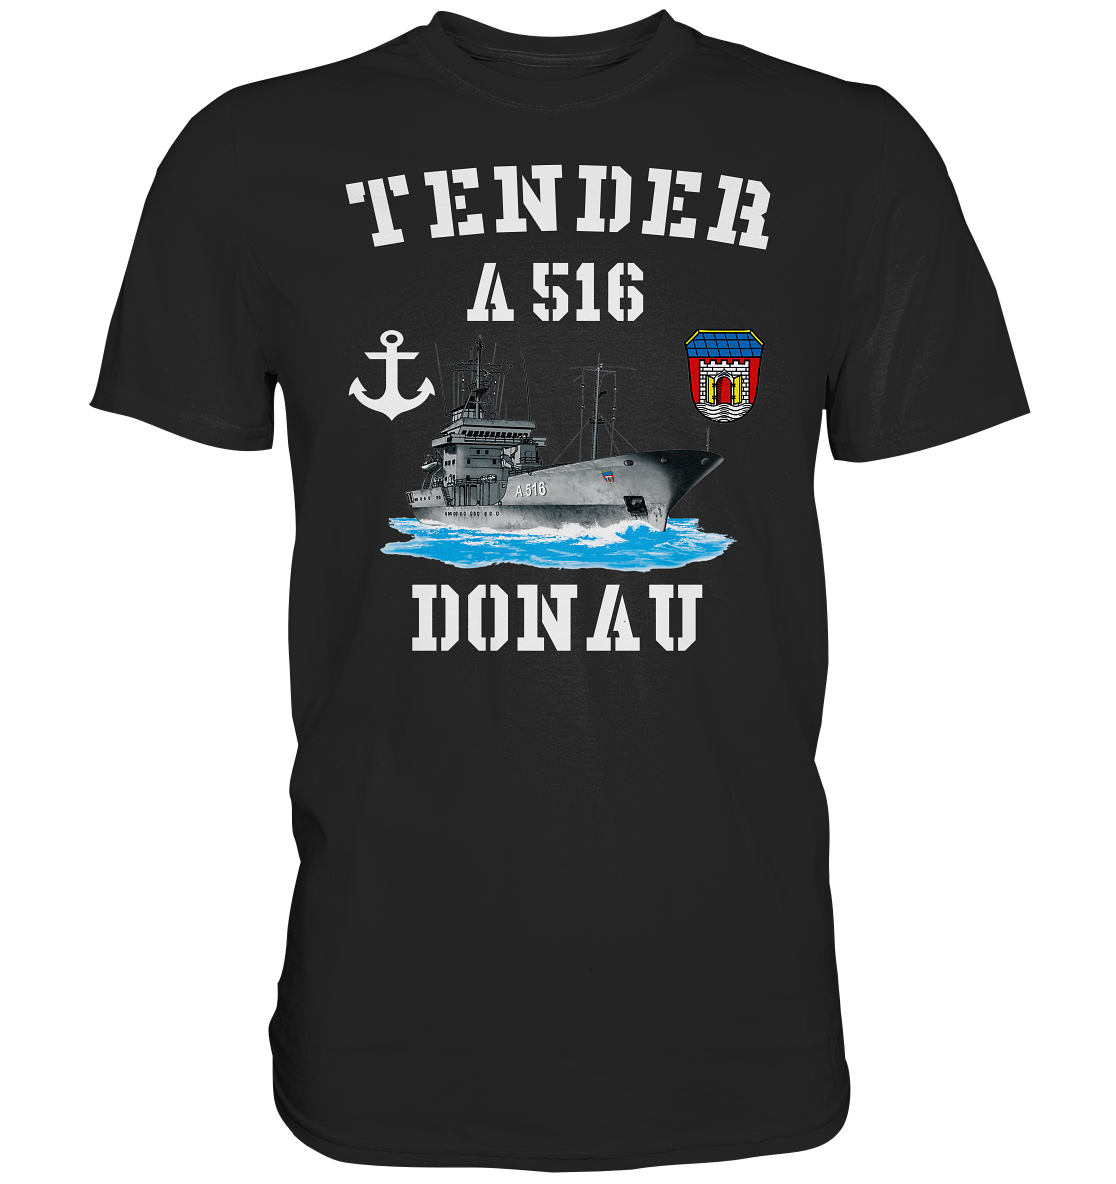 Tender A516 DONAU Anker - Premium Shirt